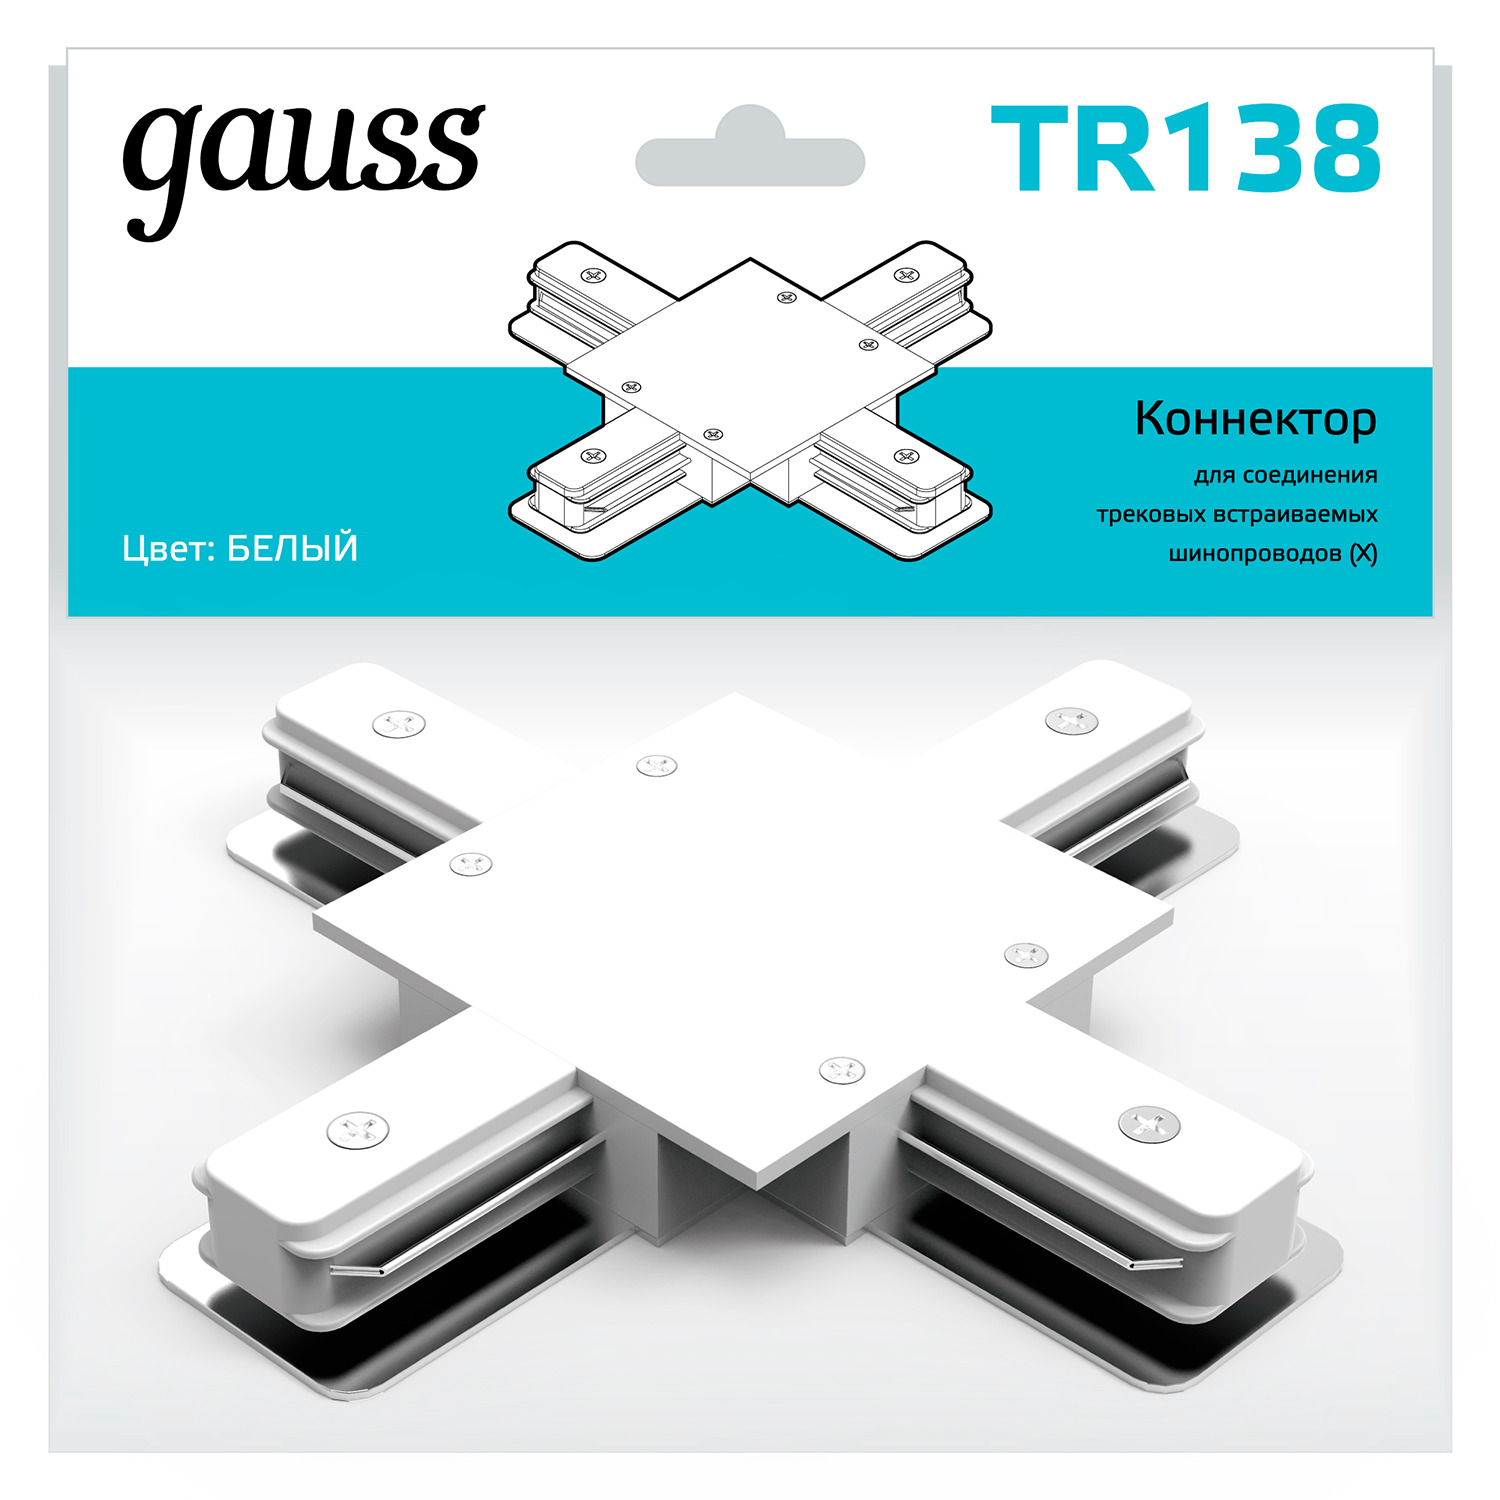 Коннектор Gauss для встраиваемых трековых шинопроводов (+) белый коннектор gauss для встраиваемых трековых шинопроводов гибкий i белый